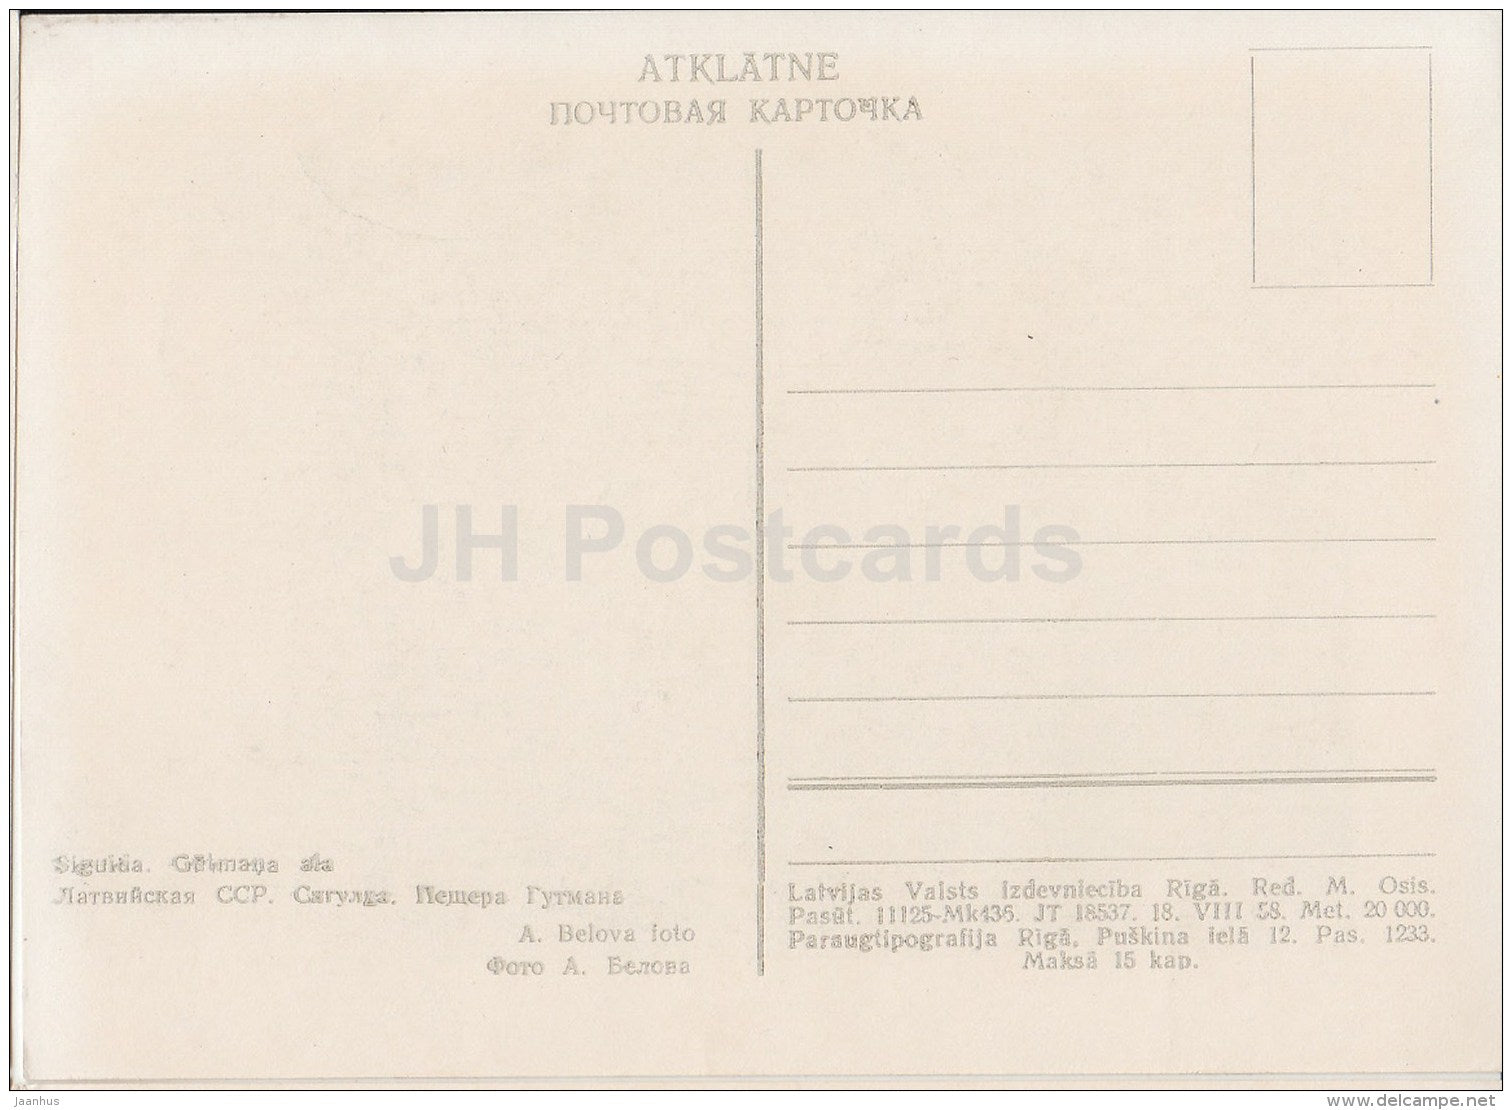 Gutmana Cave - Sigulda - old postcard - Latvia USSR - unused - JH Postcards